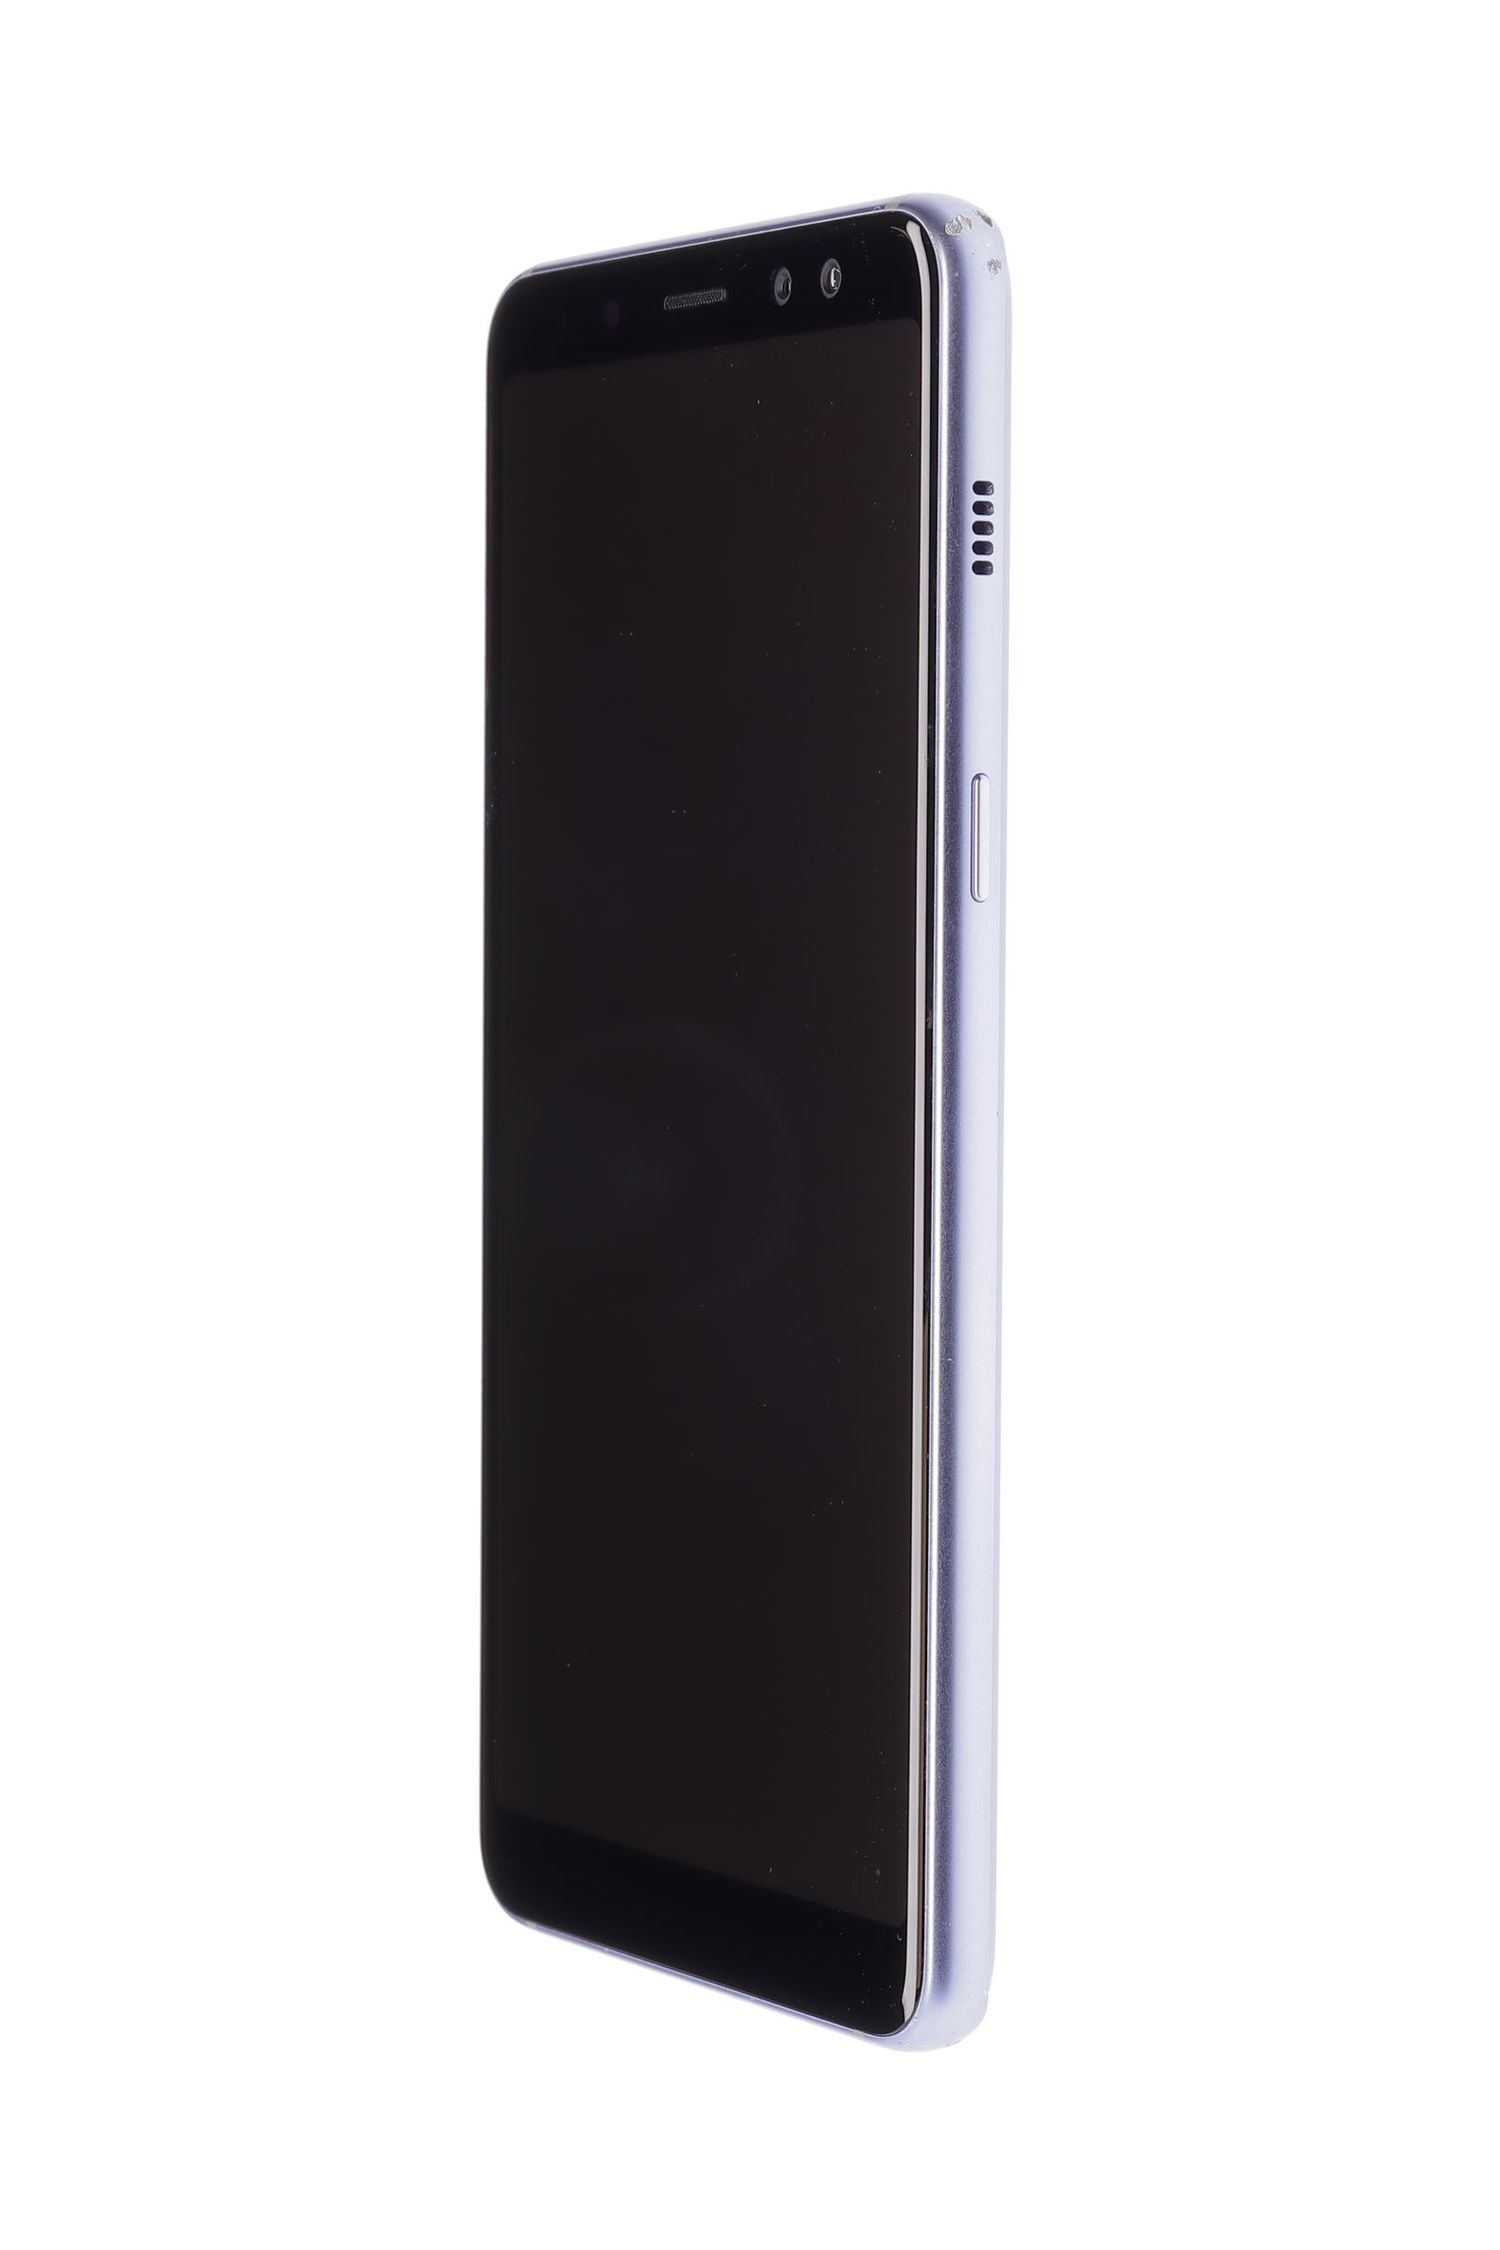 Мобилен телефон Samsung Galaxy A8 (2018) Dual Sim, Orchid Gray, 32 GB, Foarte Bun